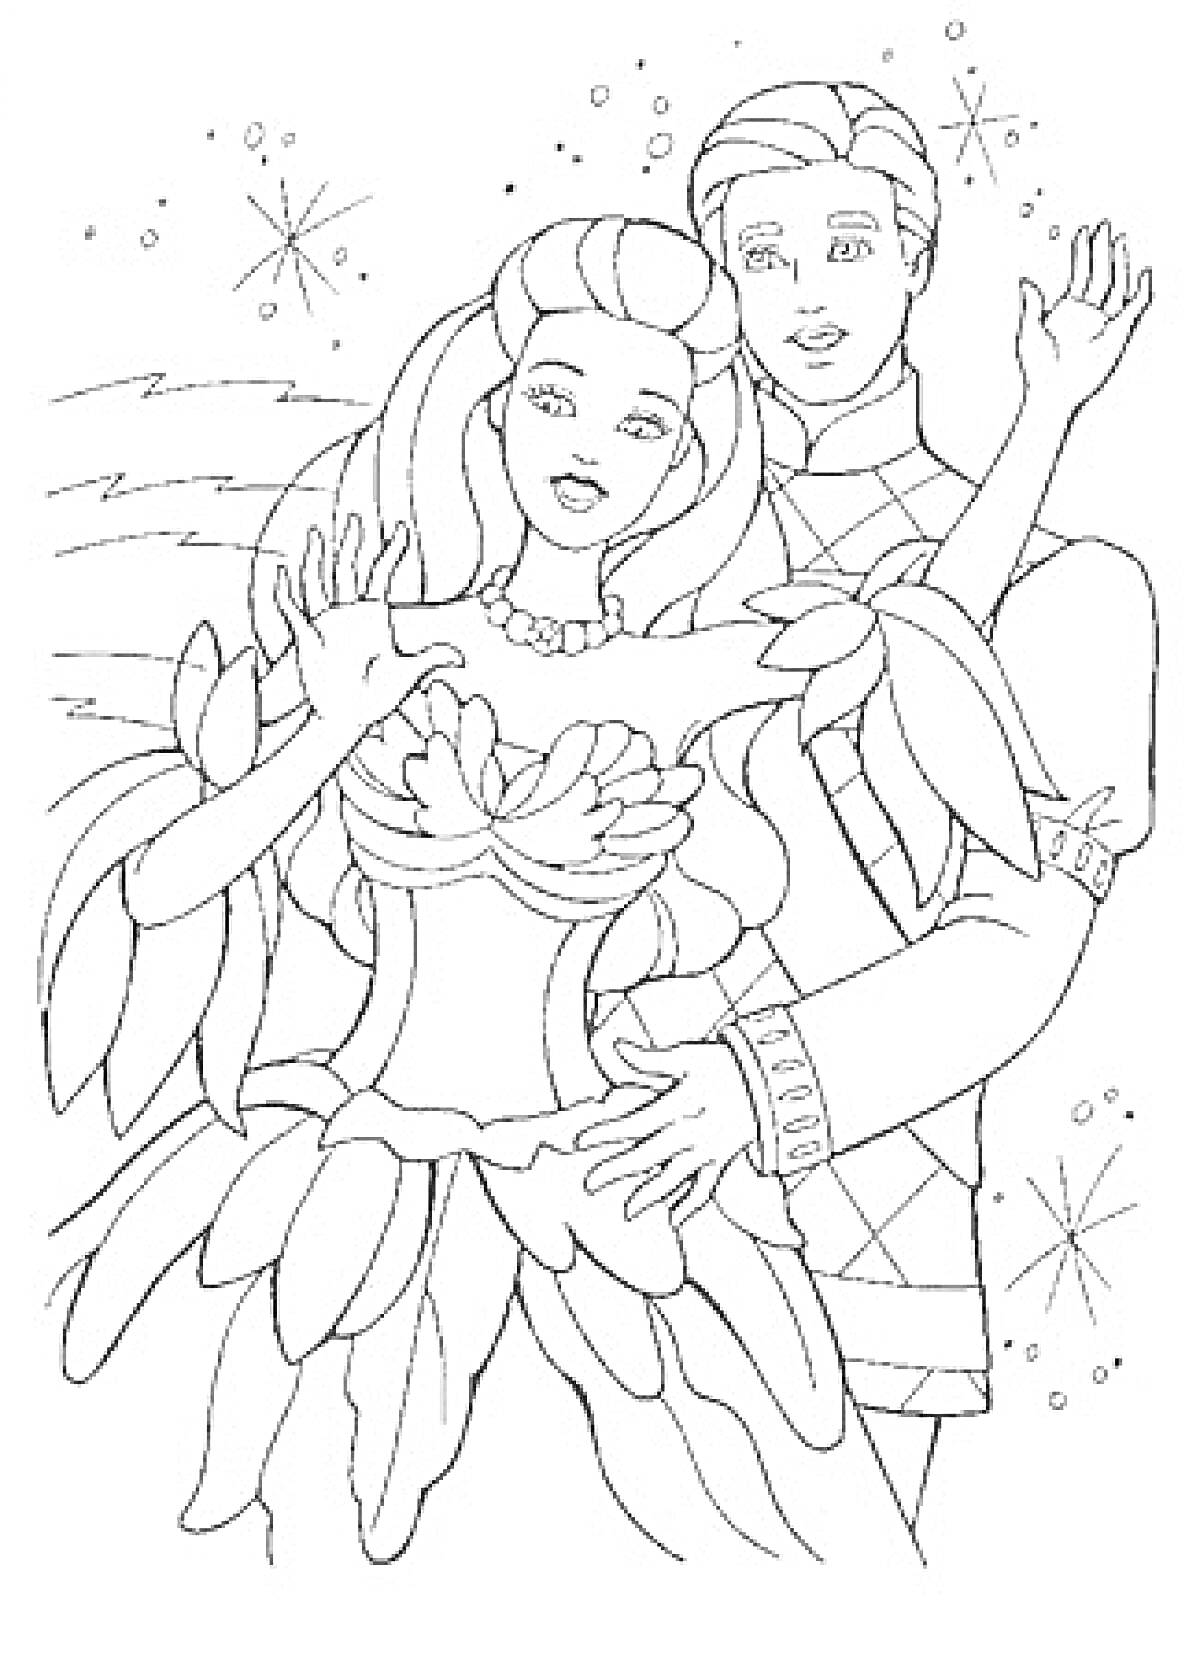 Раскраска Барби и Кен на танцах в сказочных костюмах с элементами природы и звездного фона